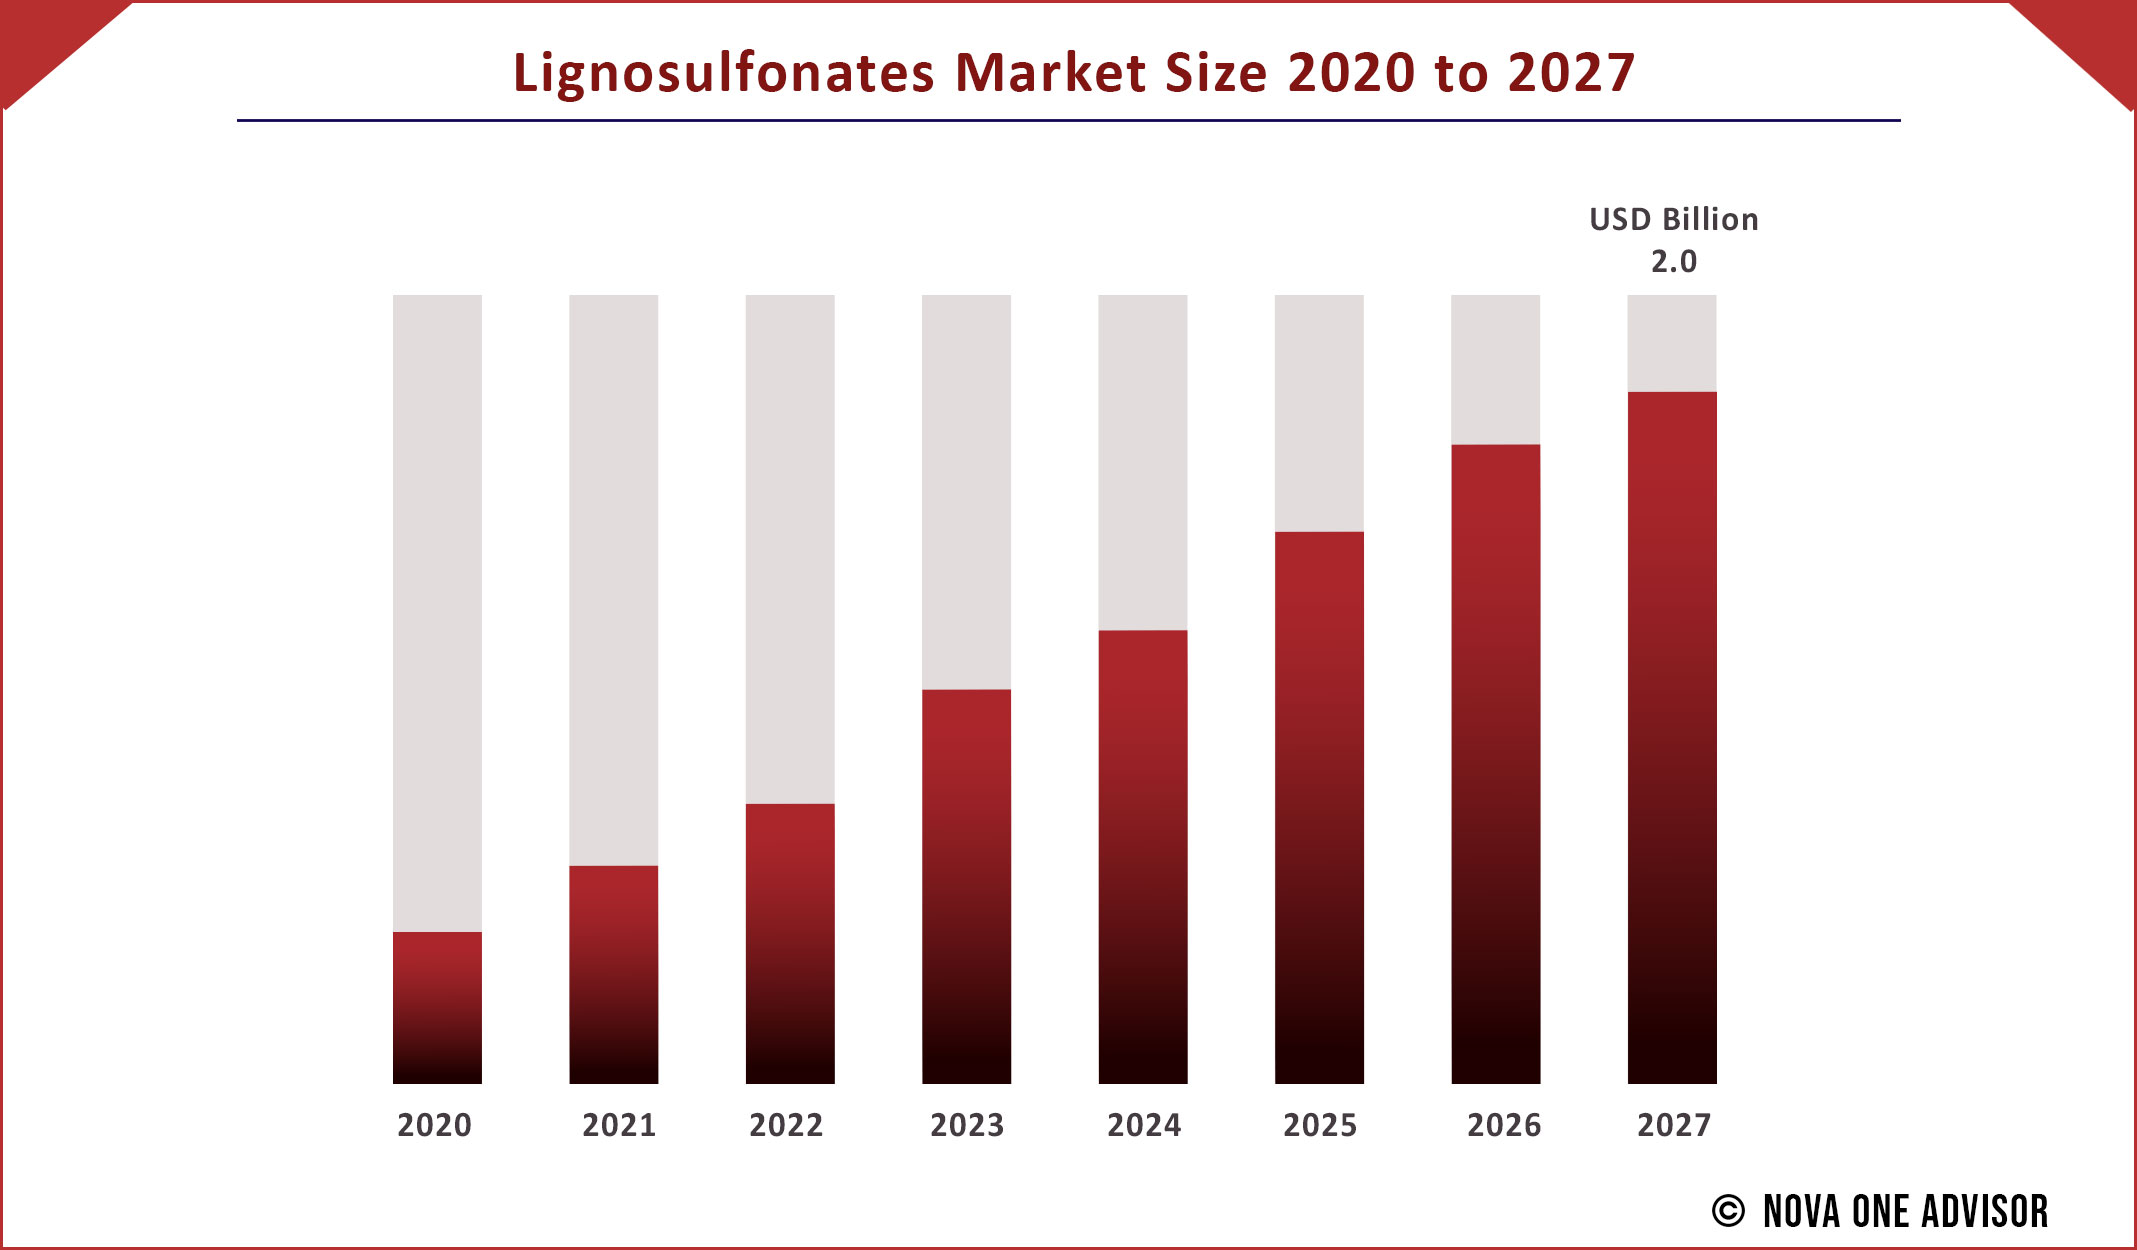 Lignosulfonates Market Size 2020 to 2027